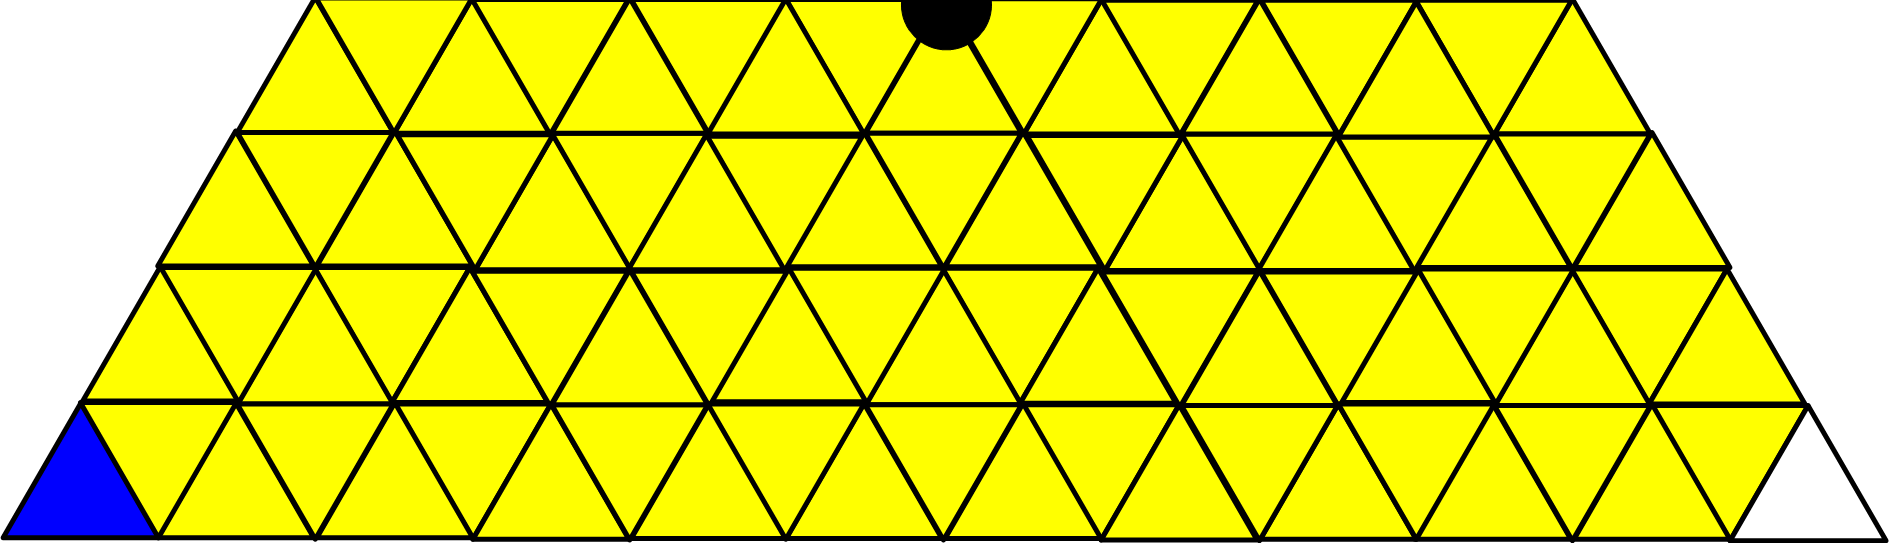 mavi (üçüncü oyuncu) renkli, 3 adet taş, eşkenar üçgen hücrelerden oluşan, N satırlık